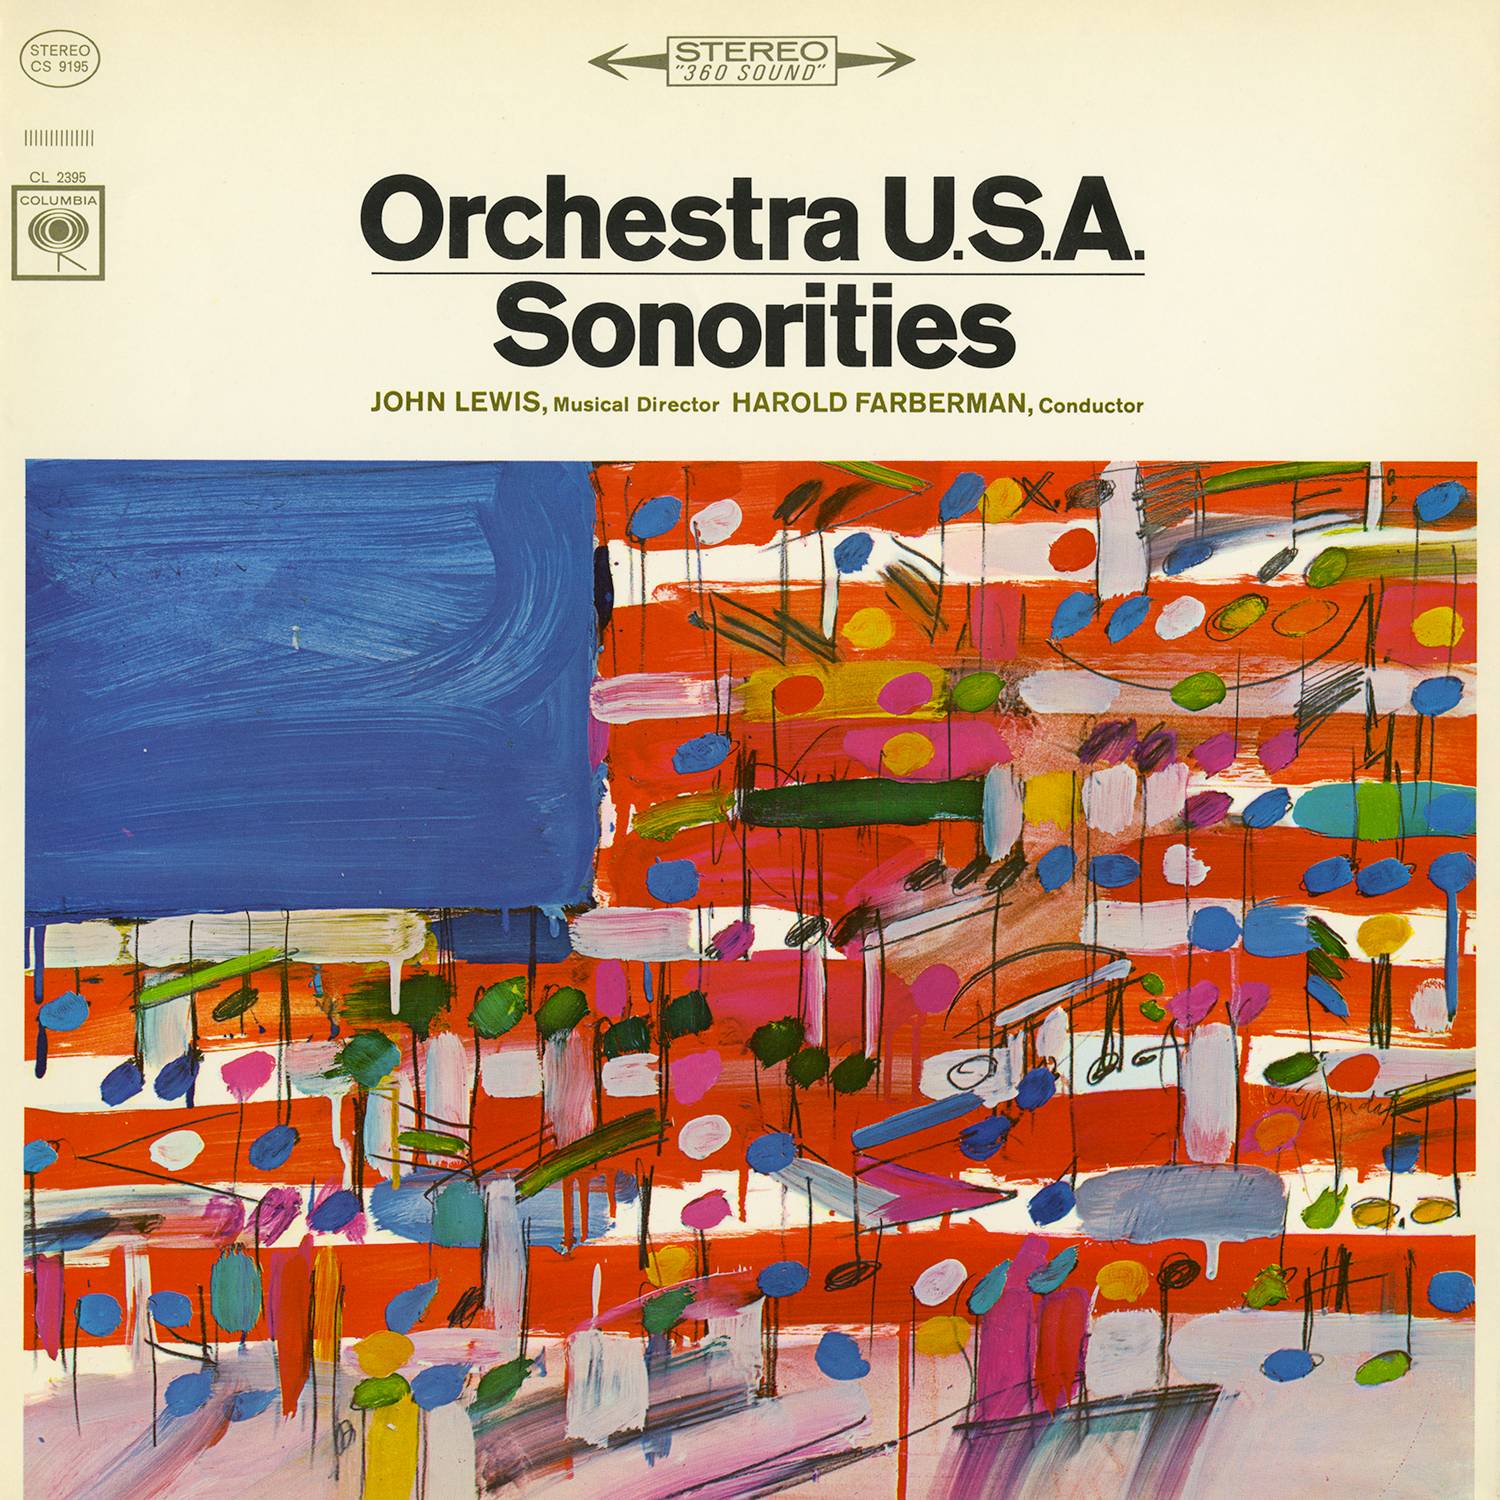 Orchestra U.S.A. – Sonorities (1965/2015) [AcousticSounds FLAC 24bit/96kHz]